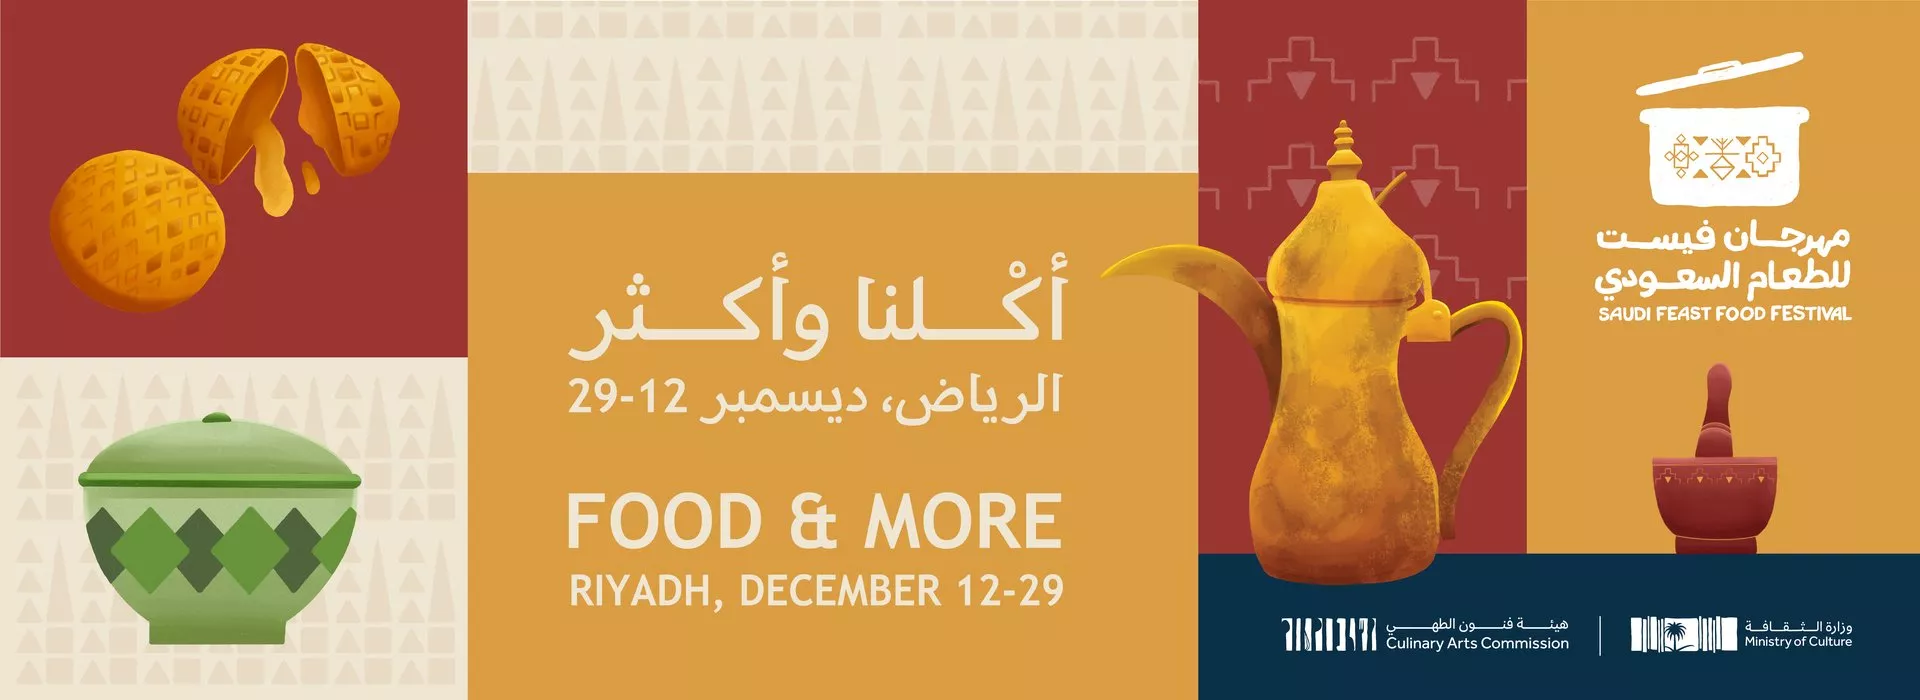 مهرجان فيست للطعام السعودي 2022، فرصة رائعة للتعرف على المطبخ السعودي